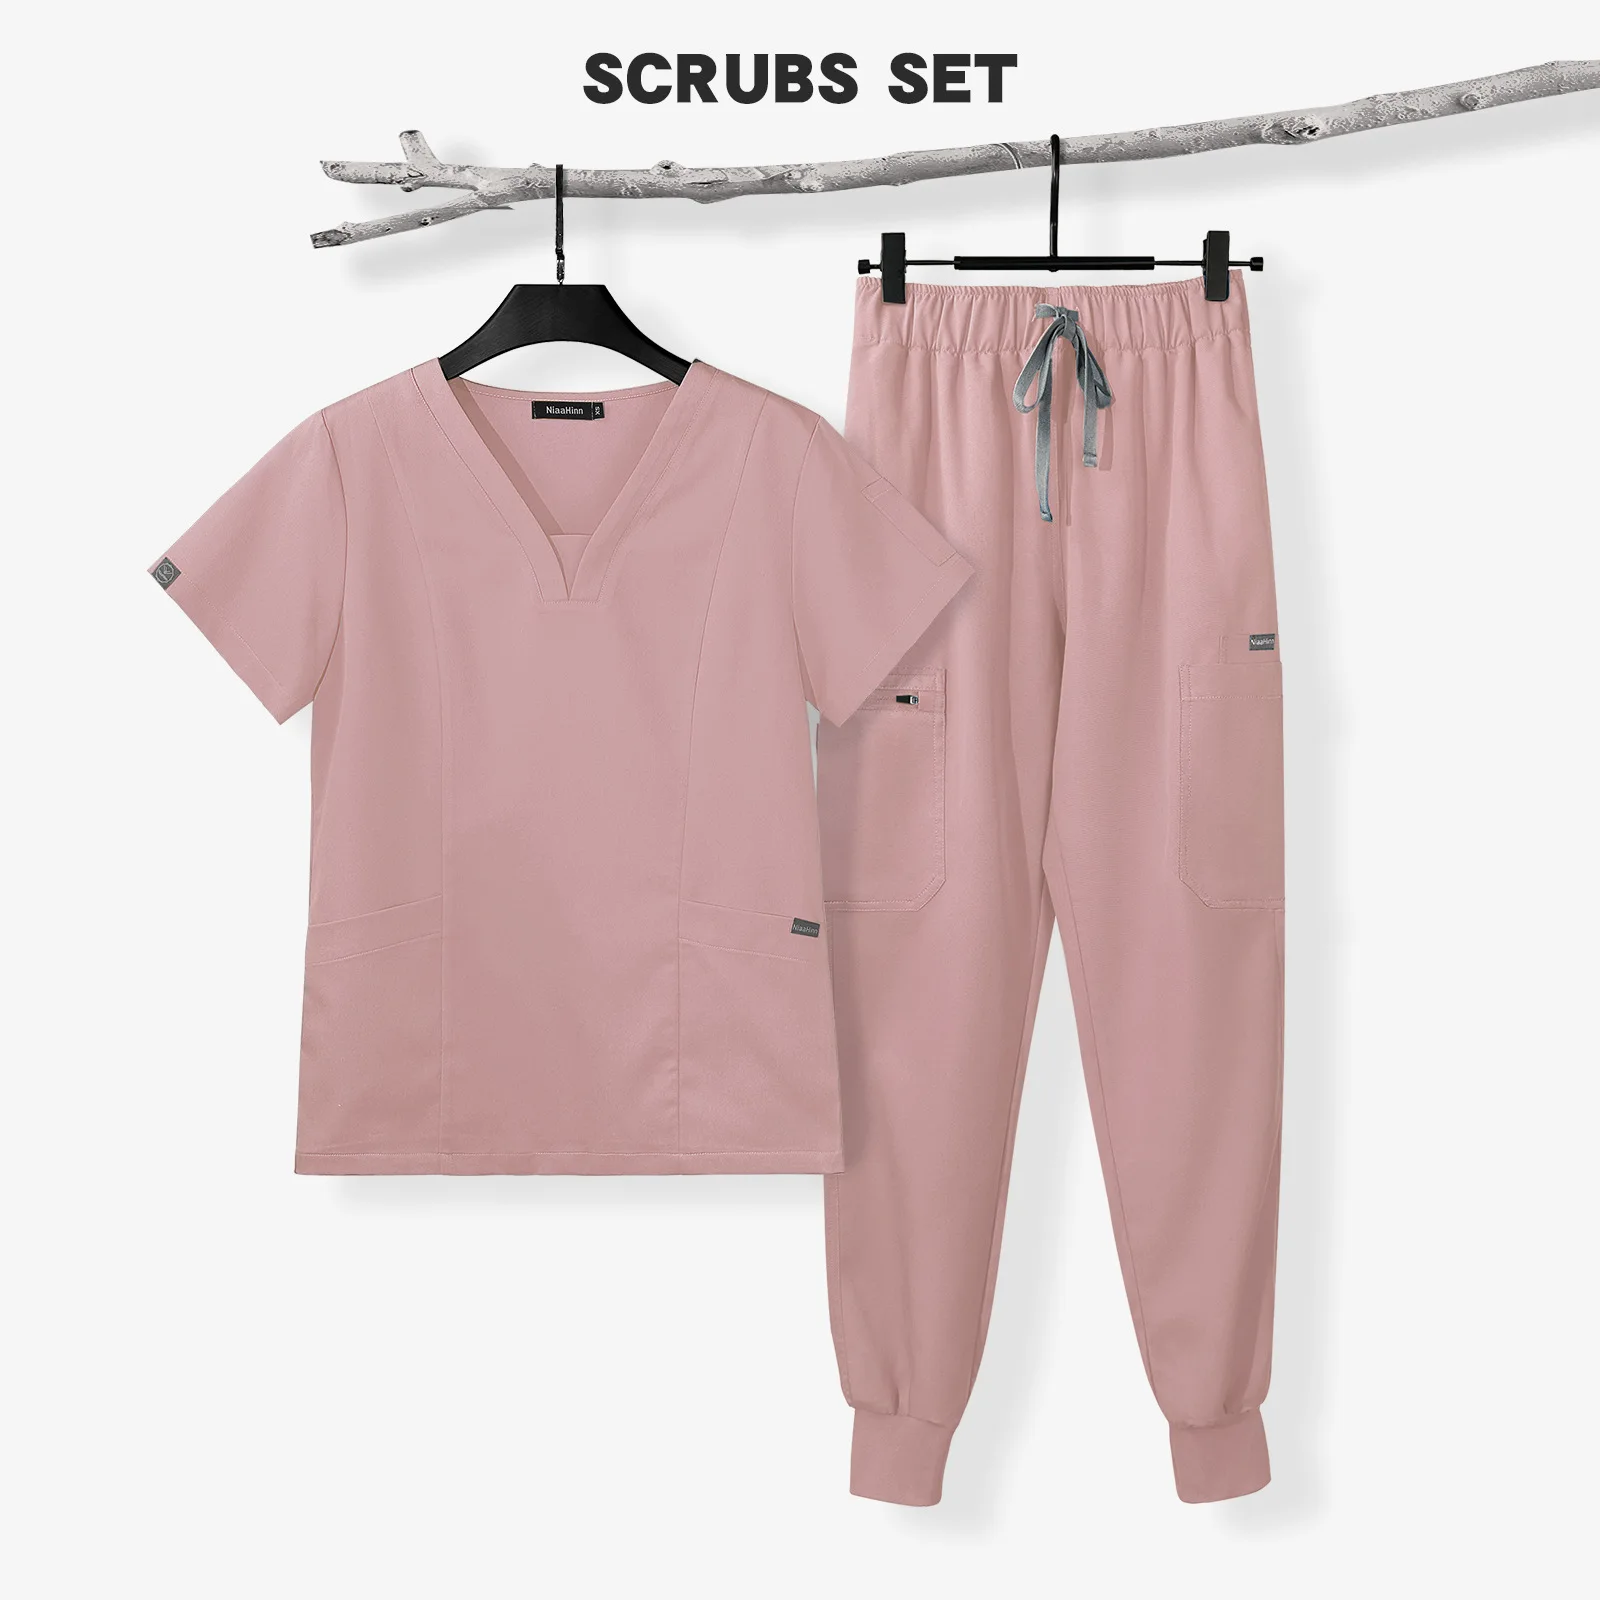 

Wholesale Scrub Nursing Uniform Scrubs Sets Surgical Suit Medical Nursing Scrubs for Doctors Women Woven Nurse Uniform